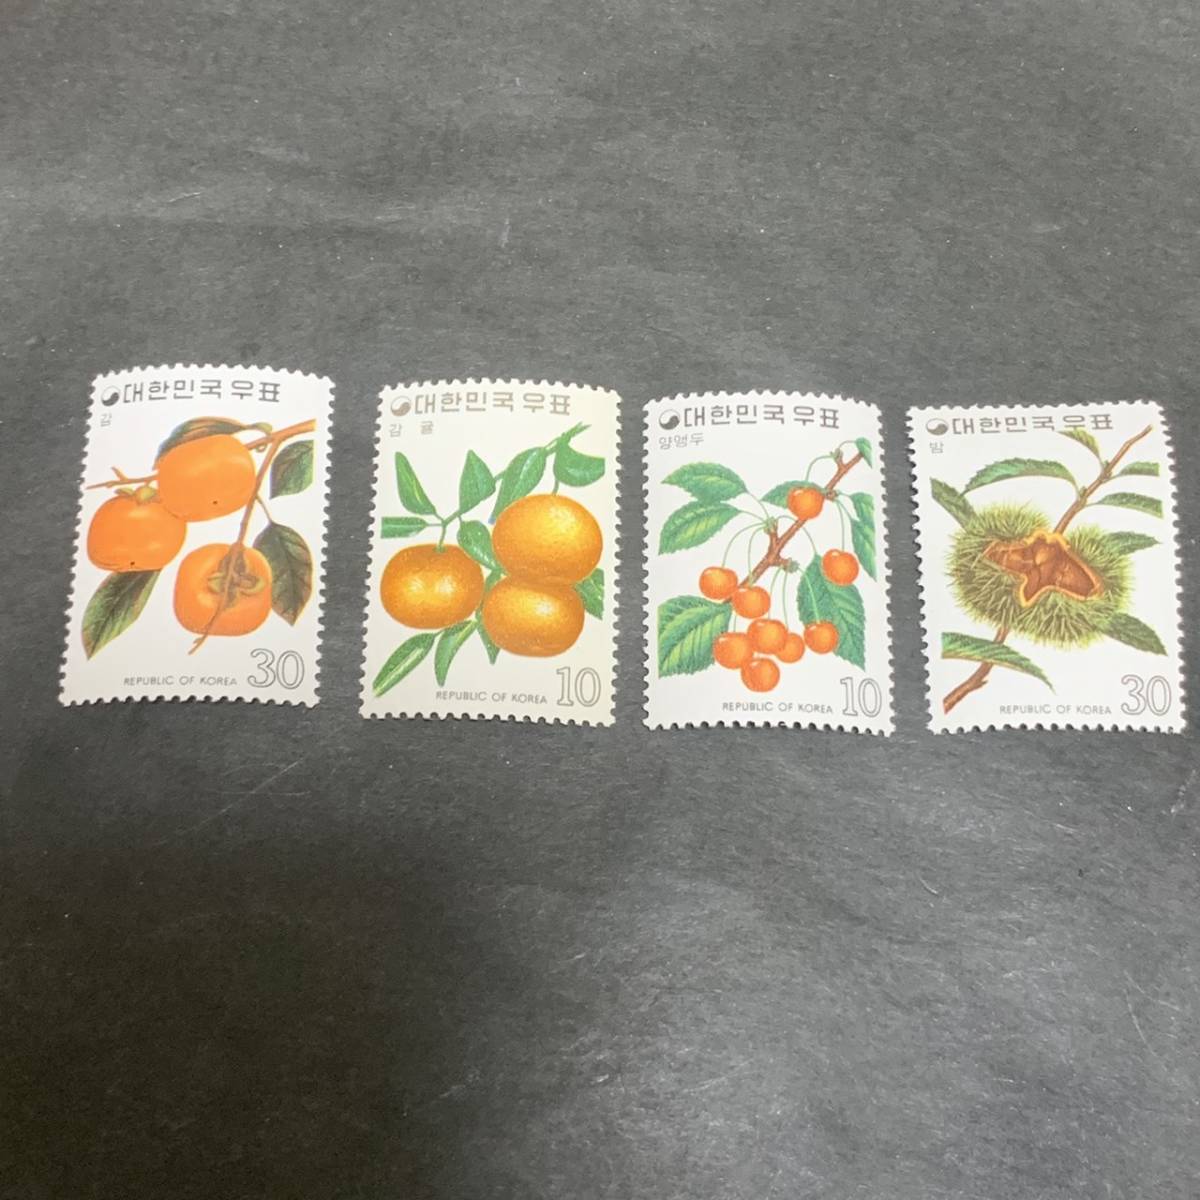 1974 年のフルーツ号に掲載された韓国からの切手 4種 同封可能 ア067_画像1